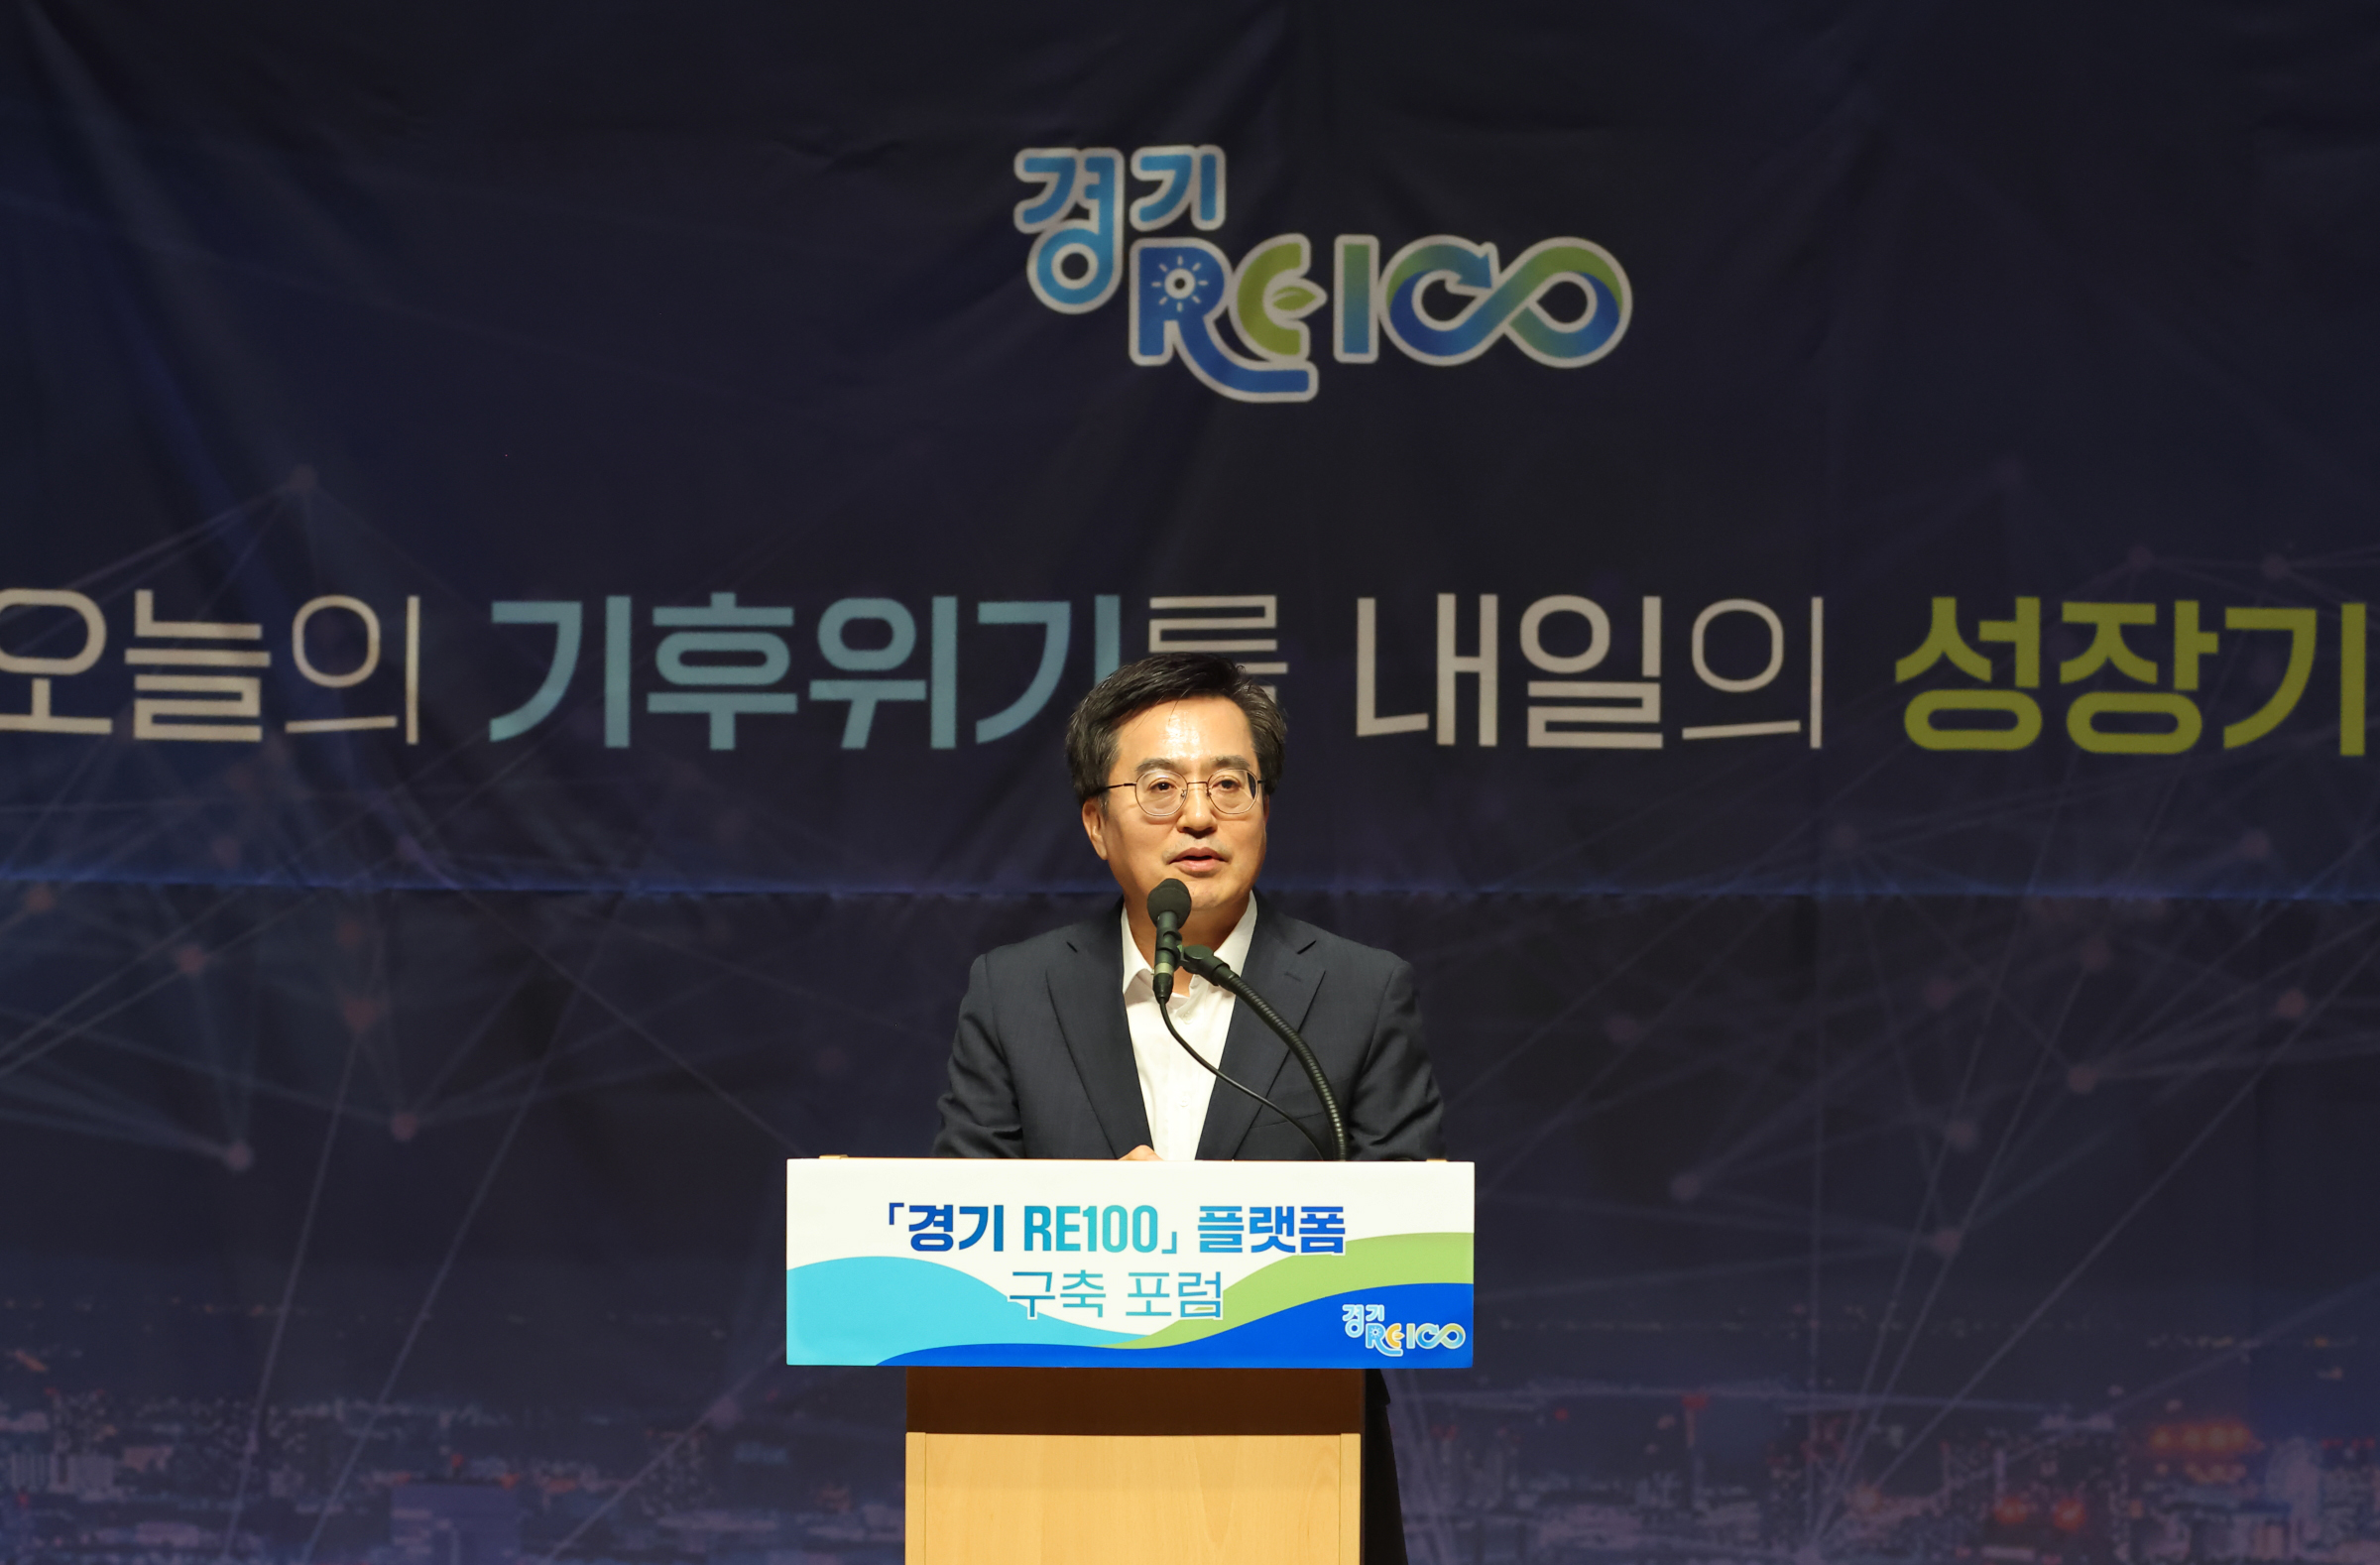 김동연 지사는 “대한민국에서 최초로 경기도가 기후변화 플랫폼을 구축한다”며 “과학과 데이터에 기반을 둔 플랫폼을 기초로 기후변화에 대응하겠다”고 밝혔습니다. 